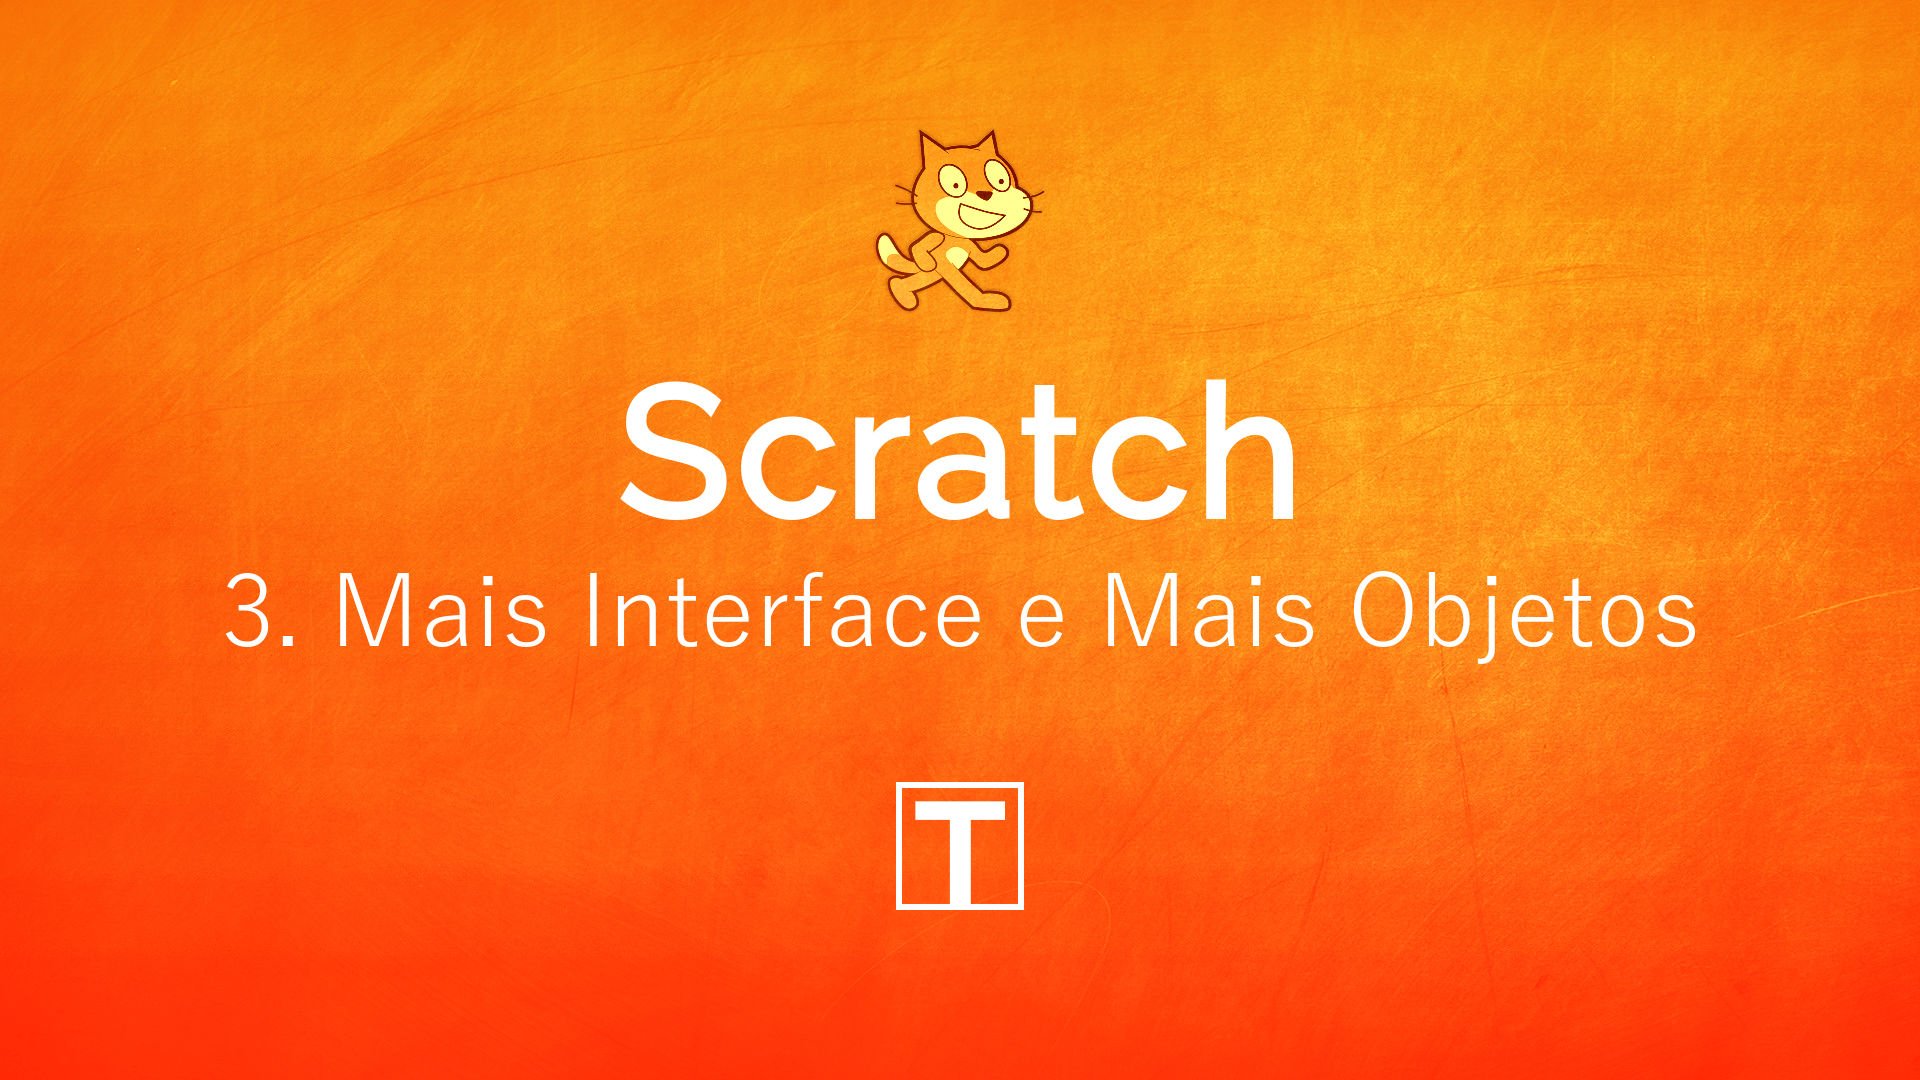 Scratch - 3. Mais Interface e Objetos